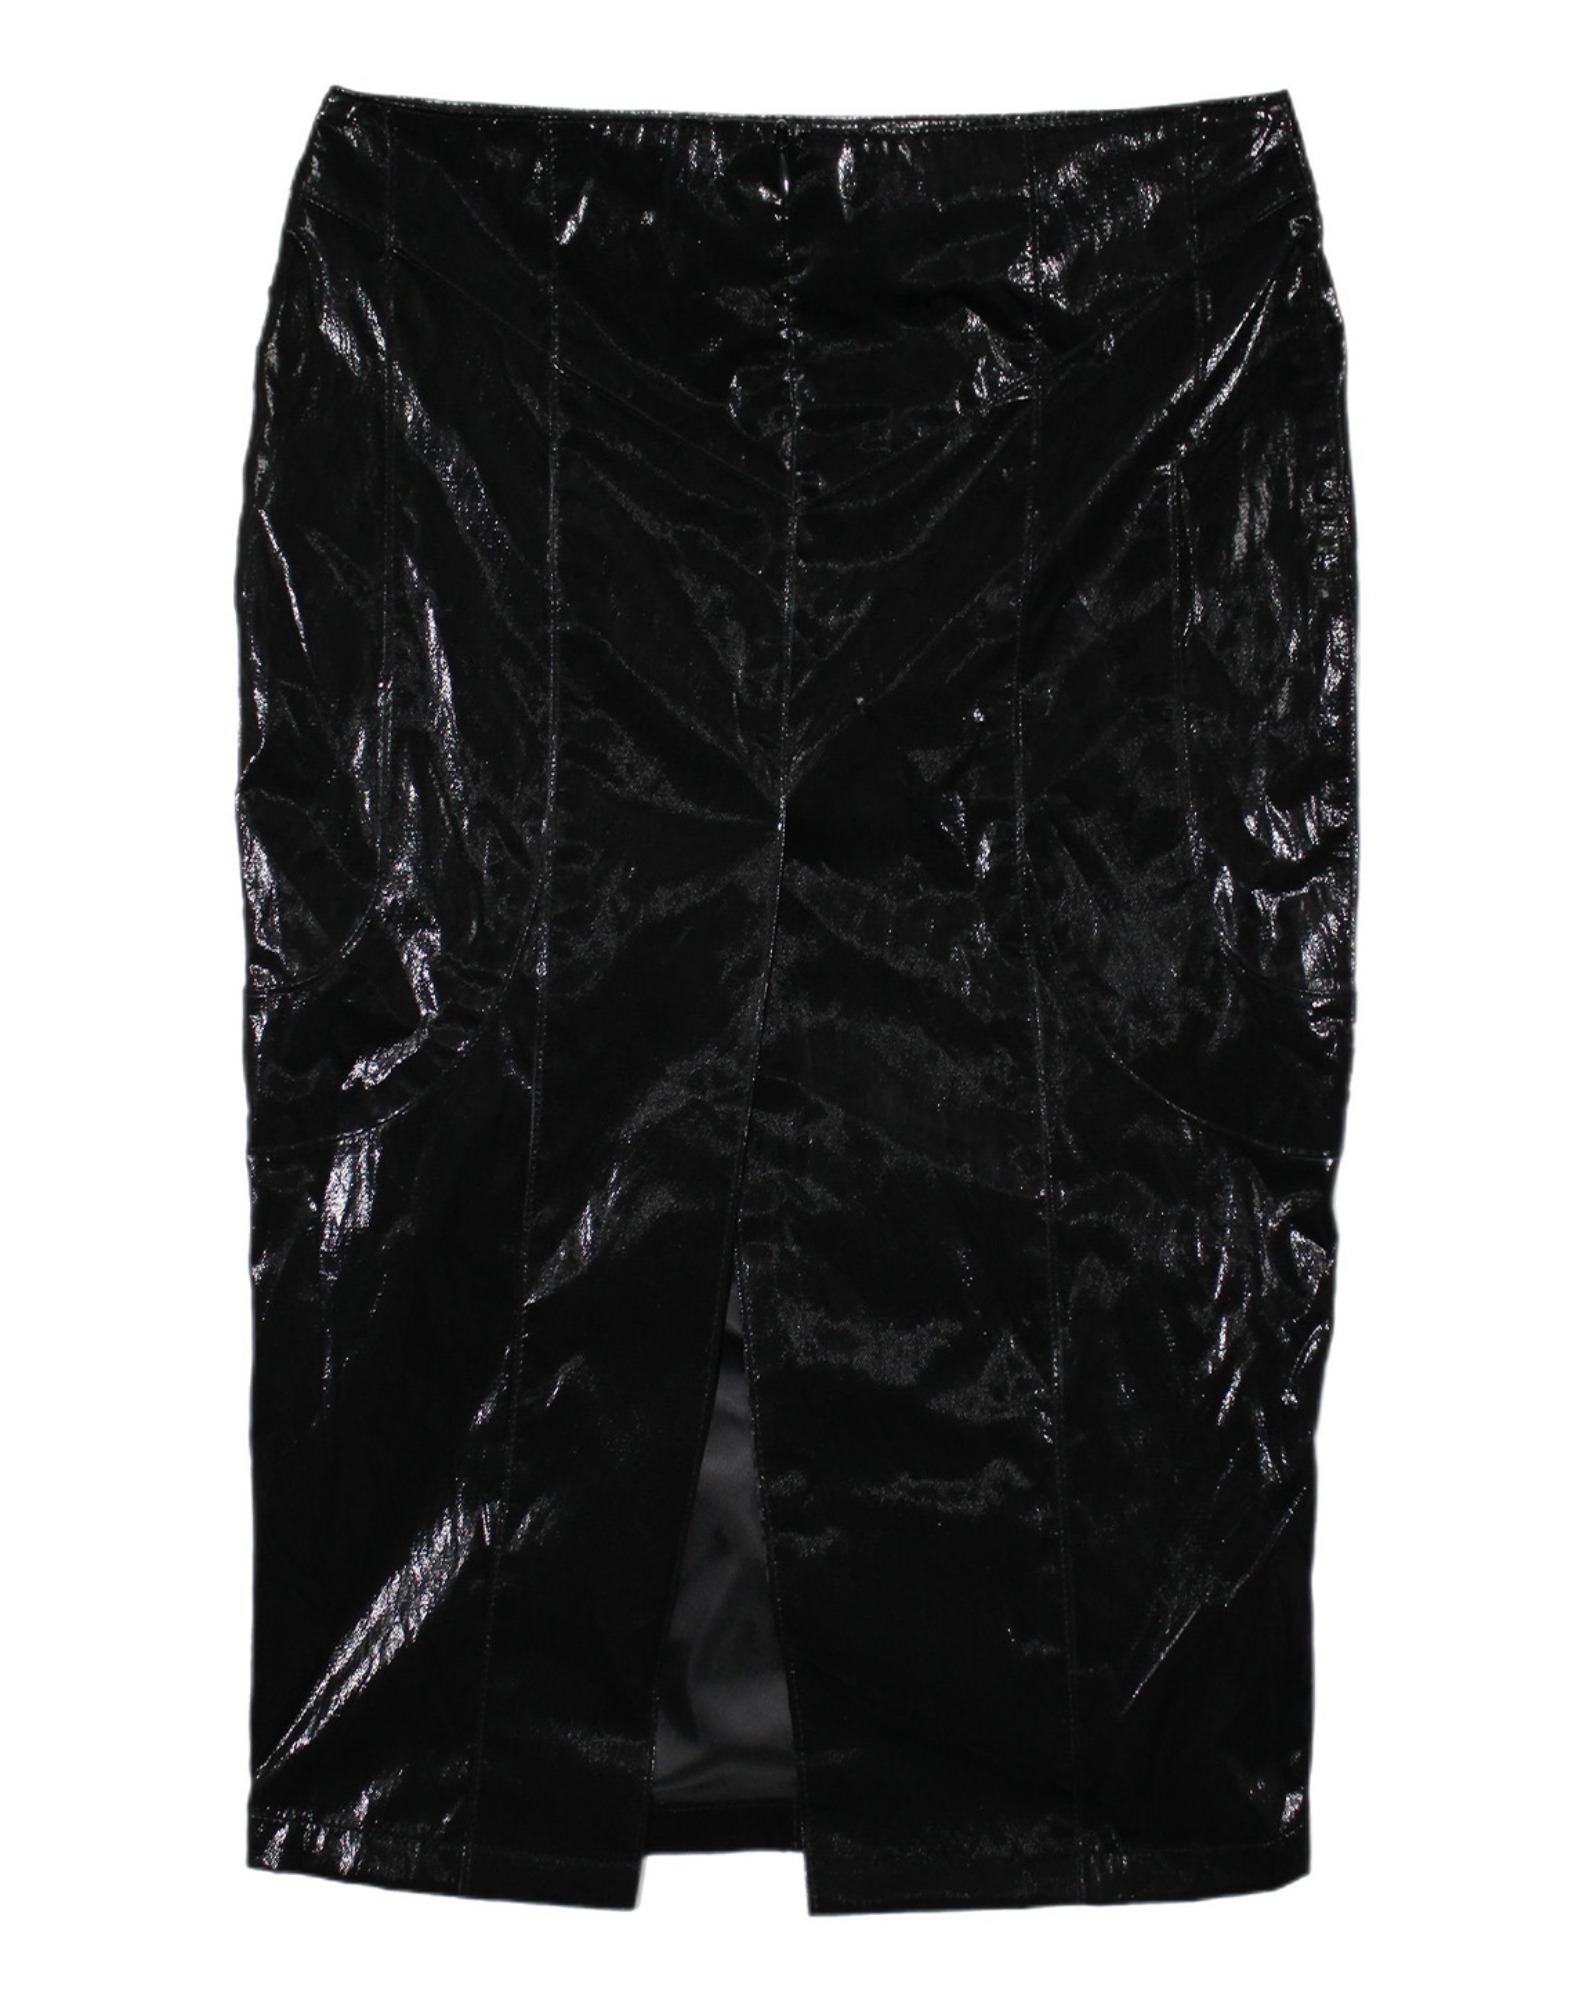 Back slit long skirt (Black)